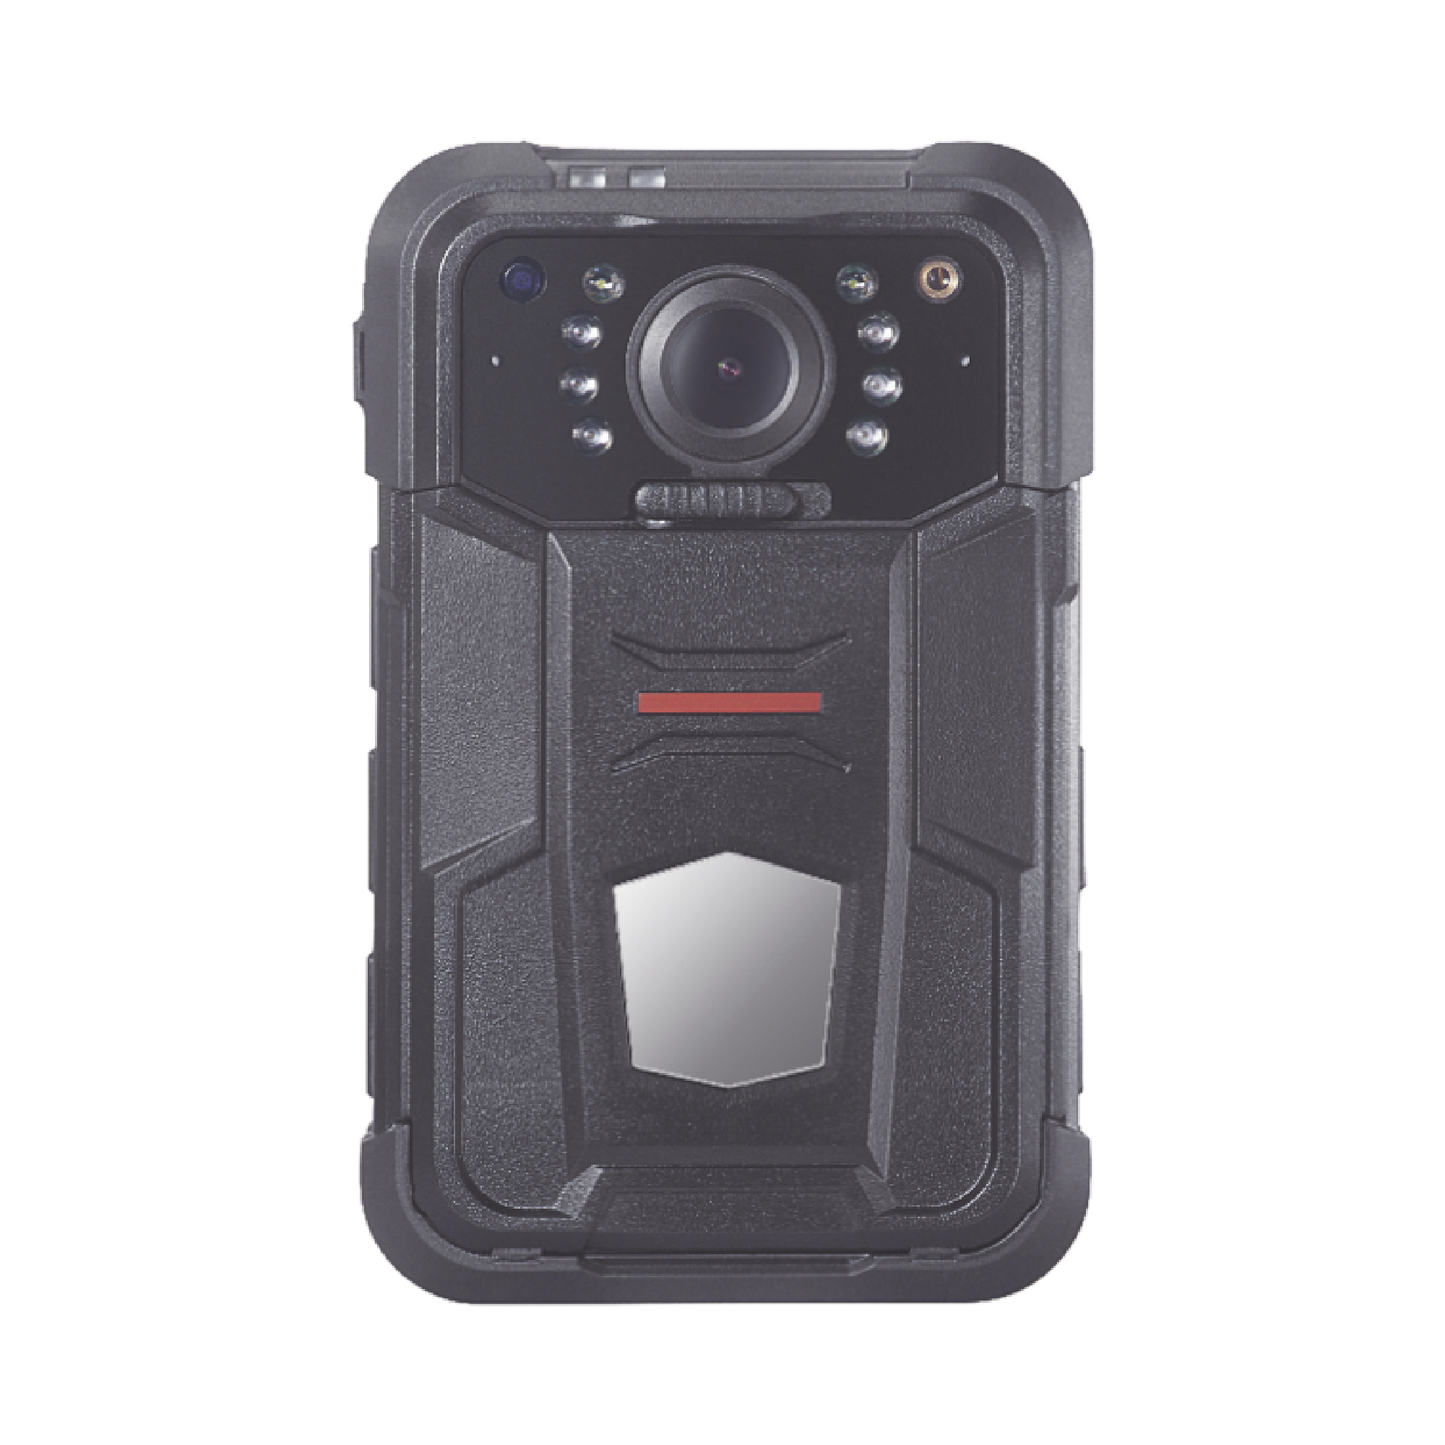 Body Camera Portátil / Grabación a 1080p / Pantalla 2.4" LCD / IP67 / H.265 / 32 GB de Almacenamiento / GPS / WIFI / 3G y 4G / Fotos de Hasta 30 Megapixel / Micrófono Integrado